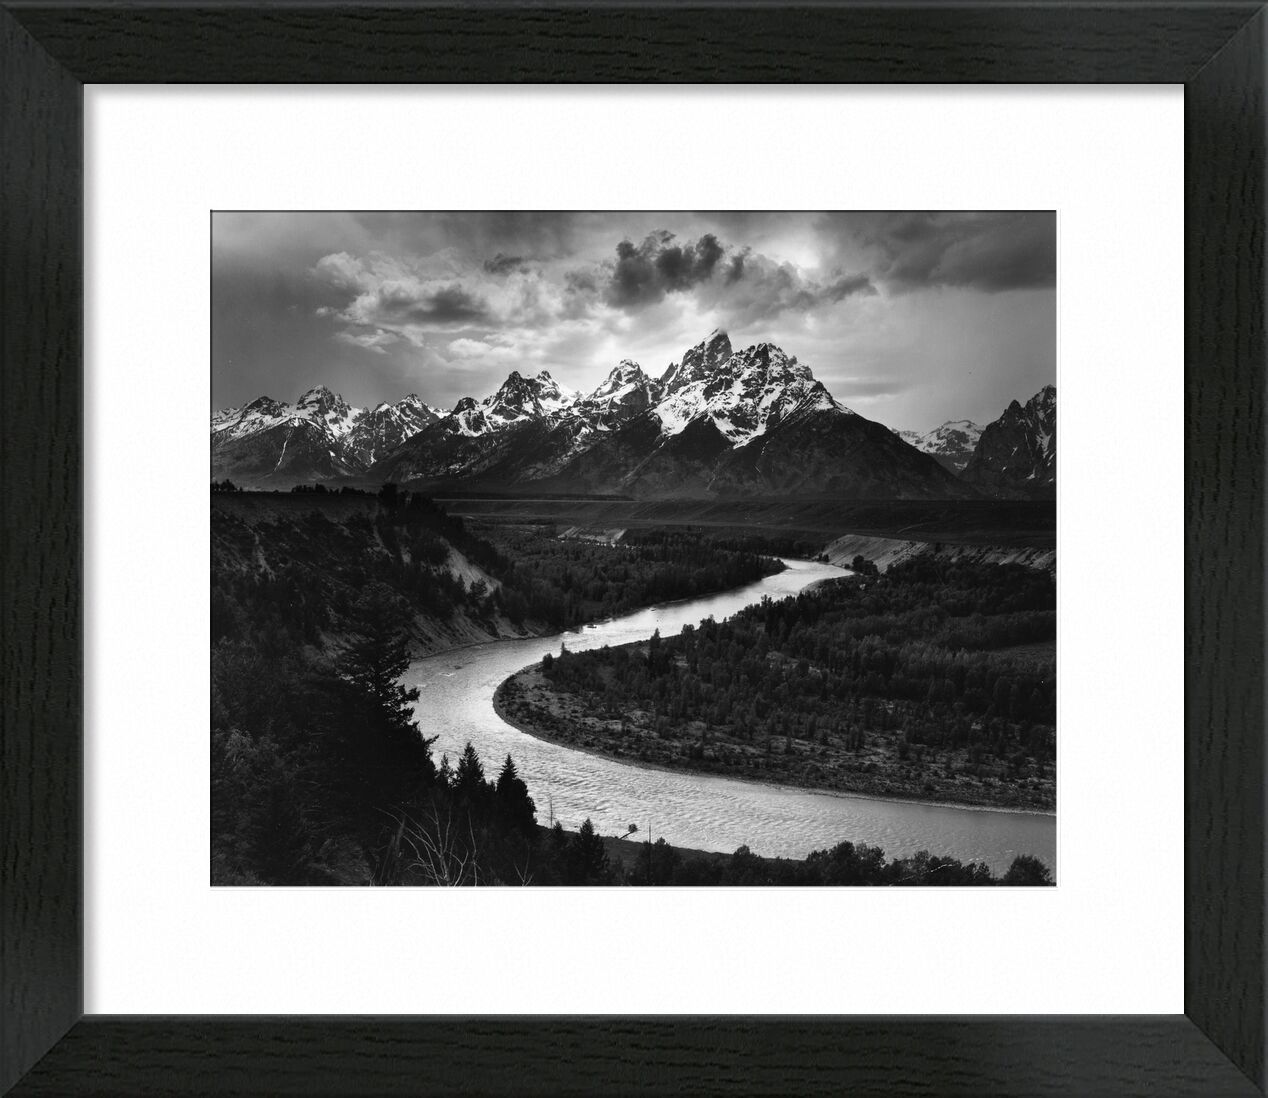 Snake River, Las Cruces - ANSEL ADAMS 1942 von Bildende Kunst, Prodi Art, Sonnenstrahl, Sonne, Licht, Wolken, ANSEL ADAMS, Schnee, Winter, Berge, Fluss